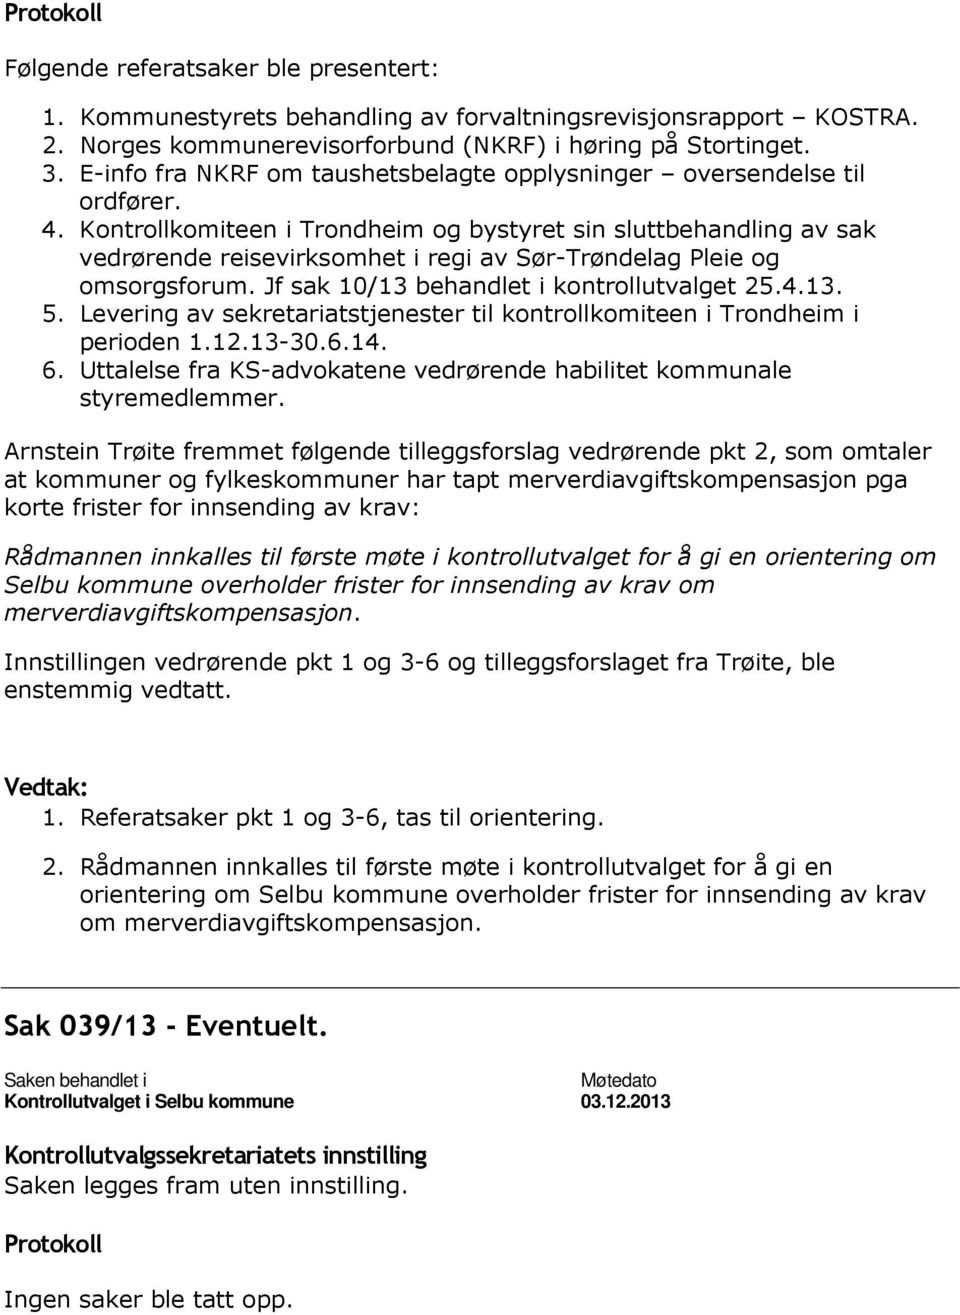 Kontrollkomiteen i Trondheim og bystyret sin sluttbehandling av sak vedrørende reisevirksomhet i regi av Sør-Trøndelag Pleie og omsorgsforum. Jf sak 10/13 behandlet i kontrollutvalget 25.4.13. 5.